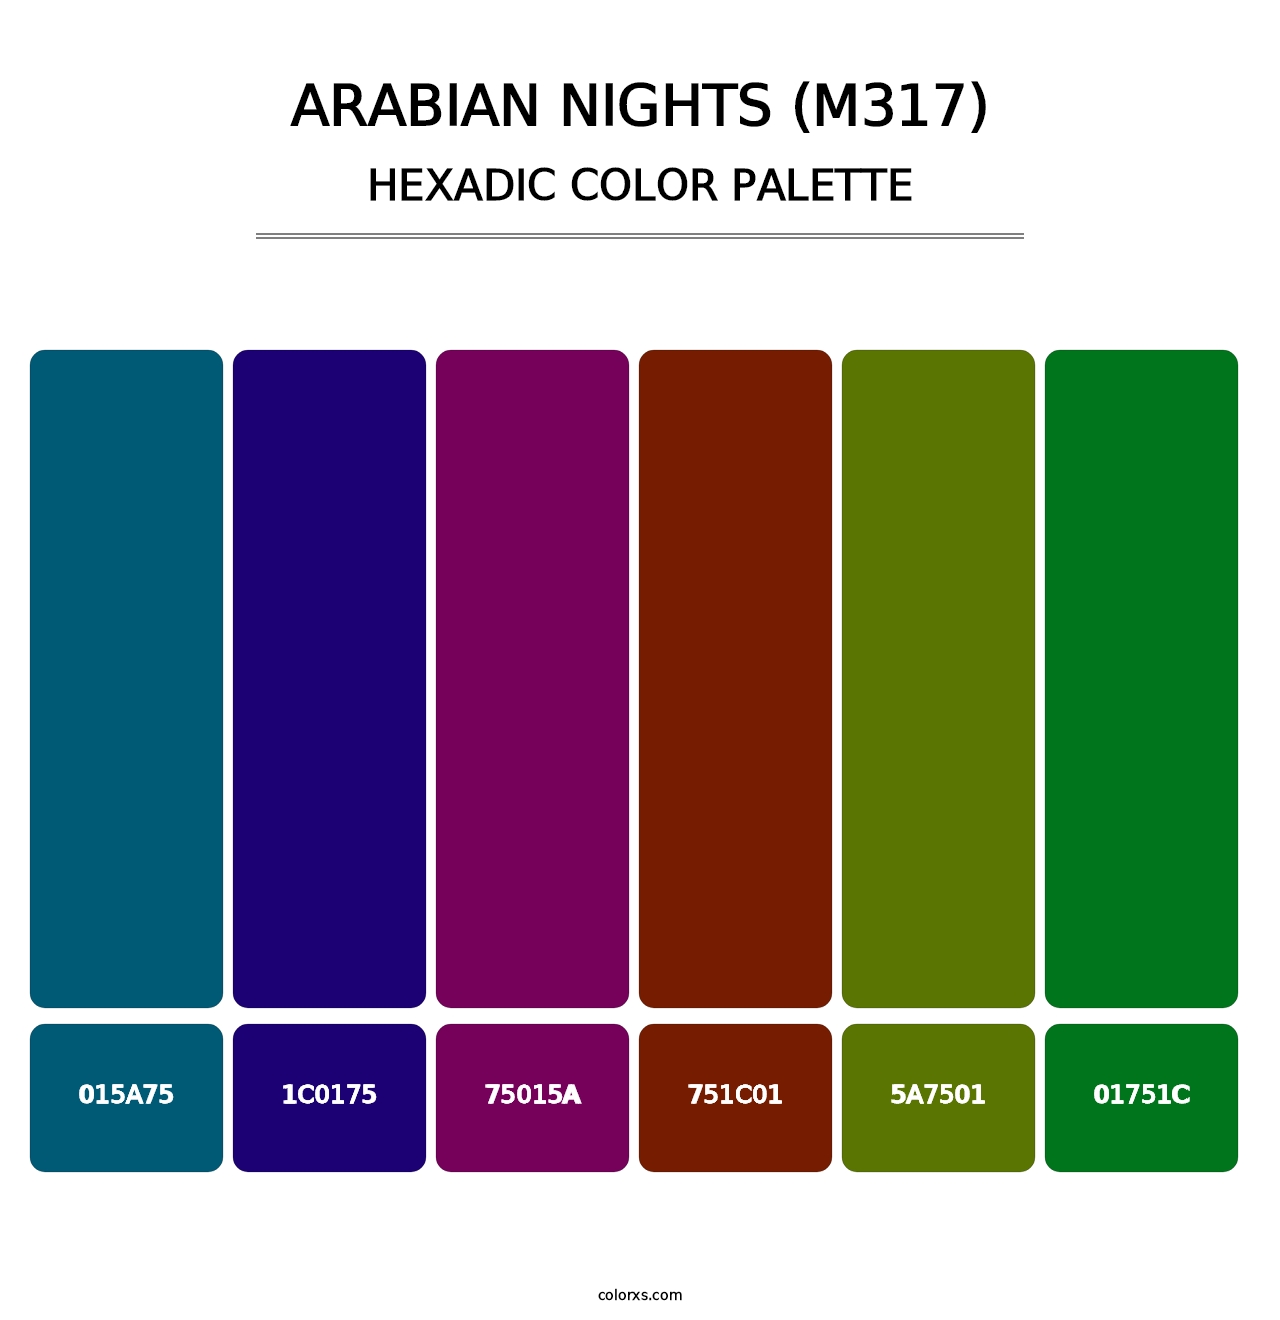 Arabian Nights (M317) - Hexadic Color Palette